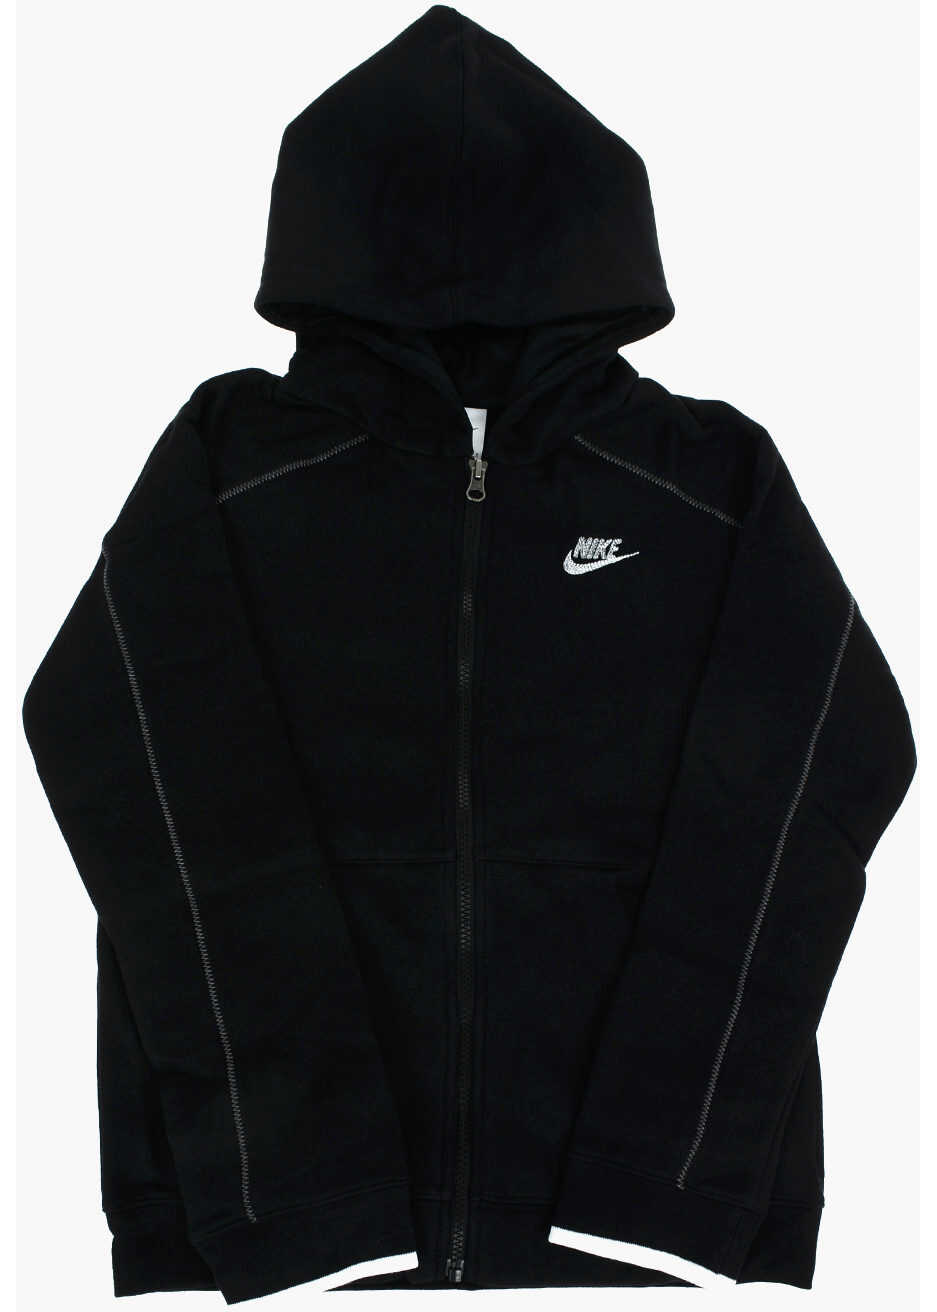 Nike Solid Color Hooded Sweatshirt With Zip Closure Black